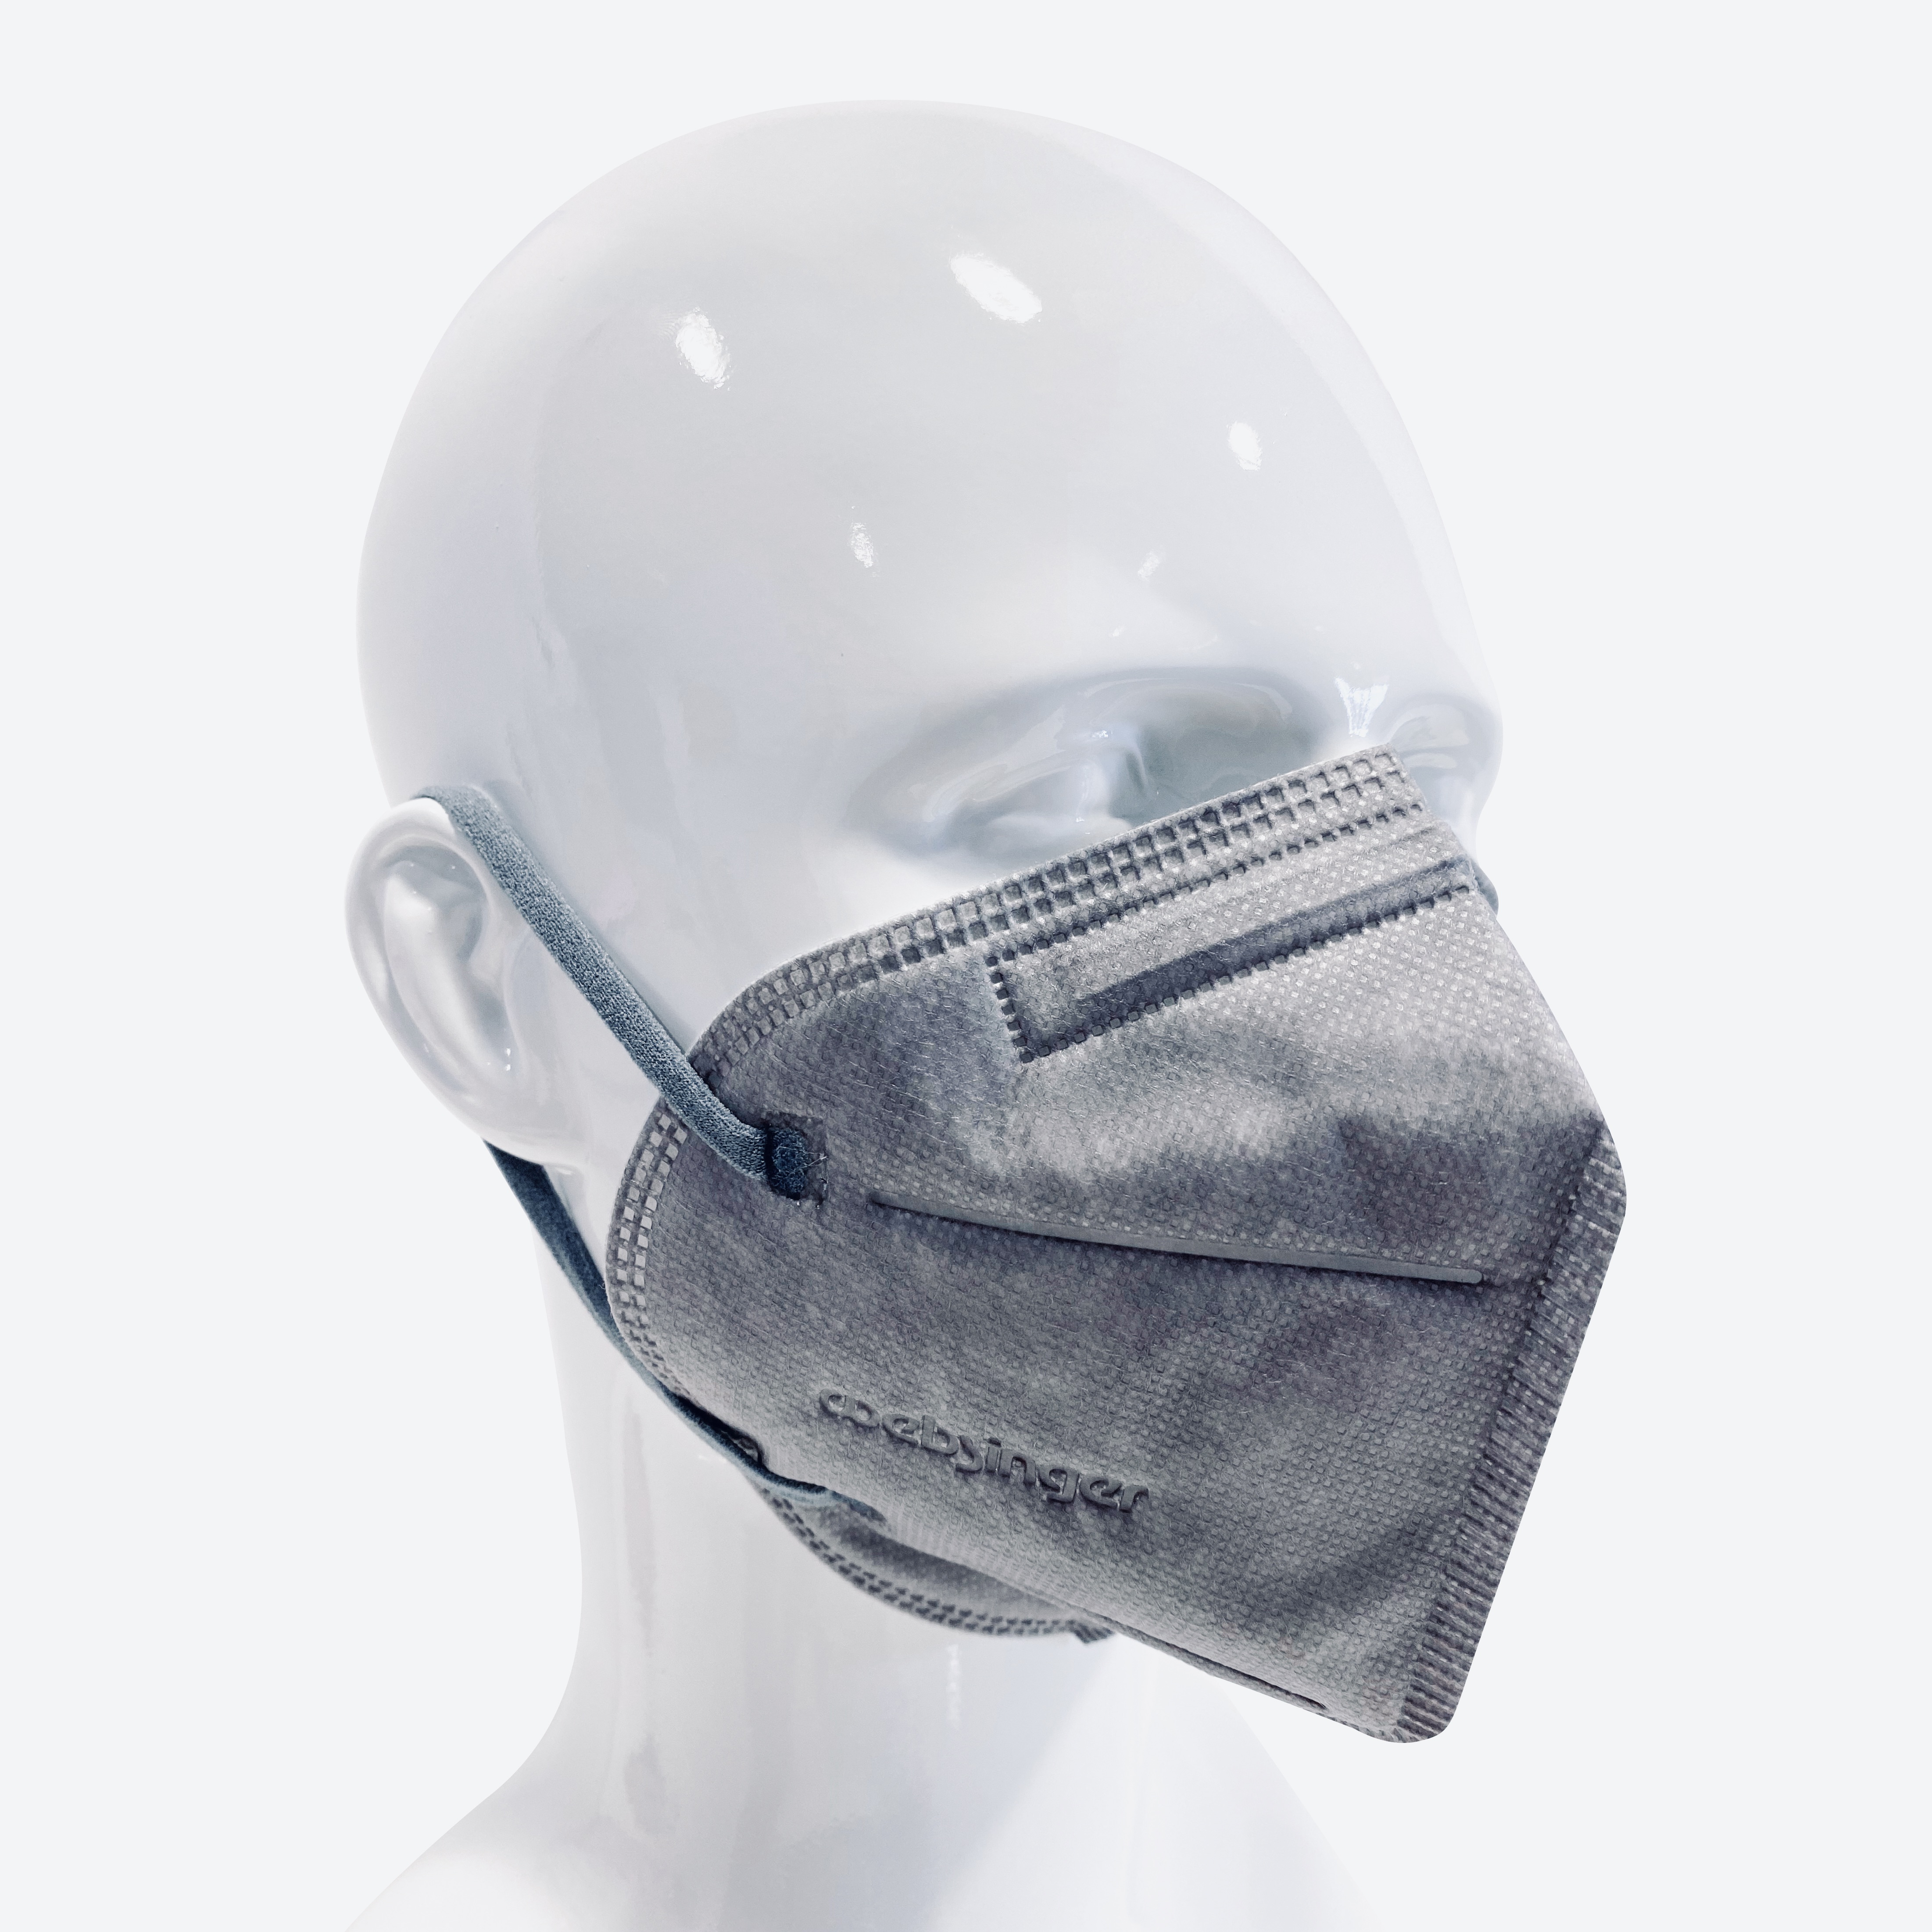 Qualitativ hochwertige FFP2-Schutzmasken - MR. GREY EDITION 